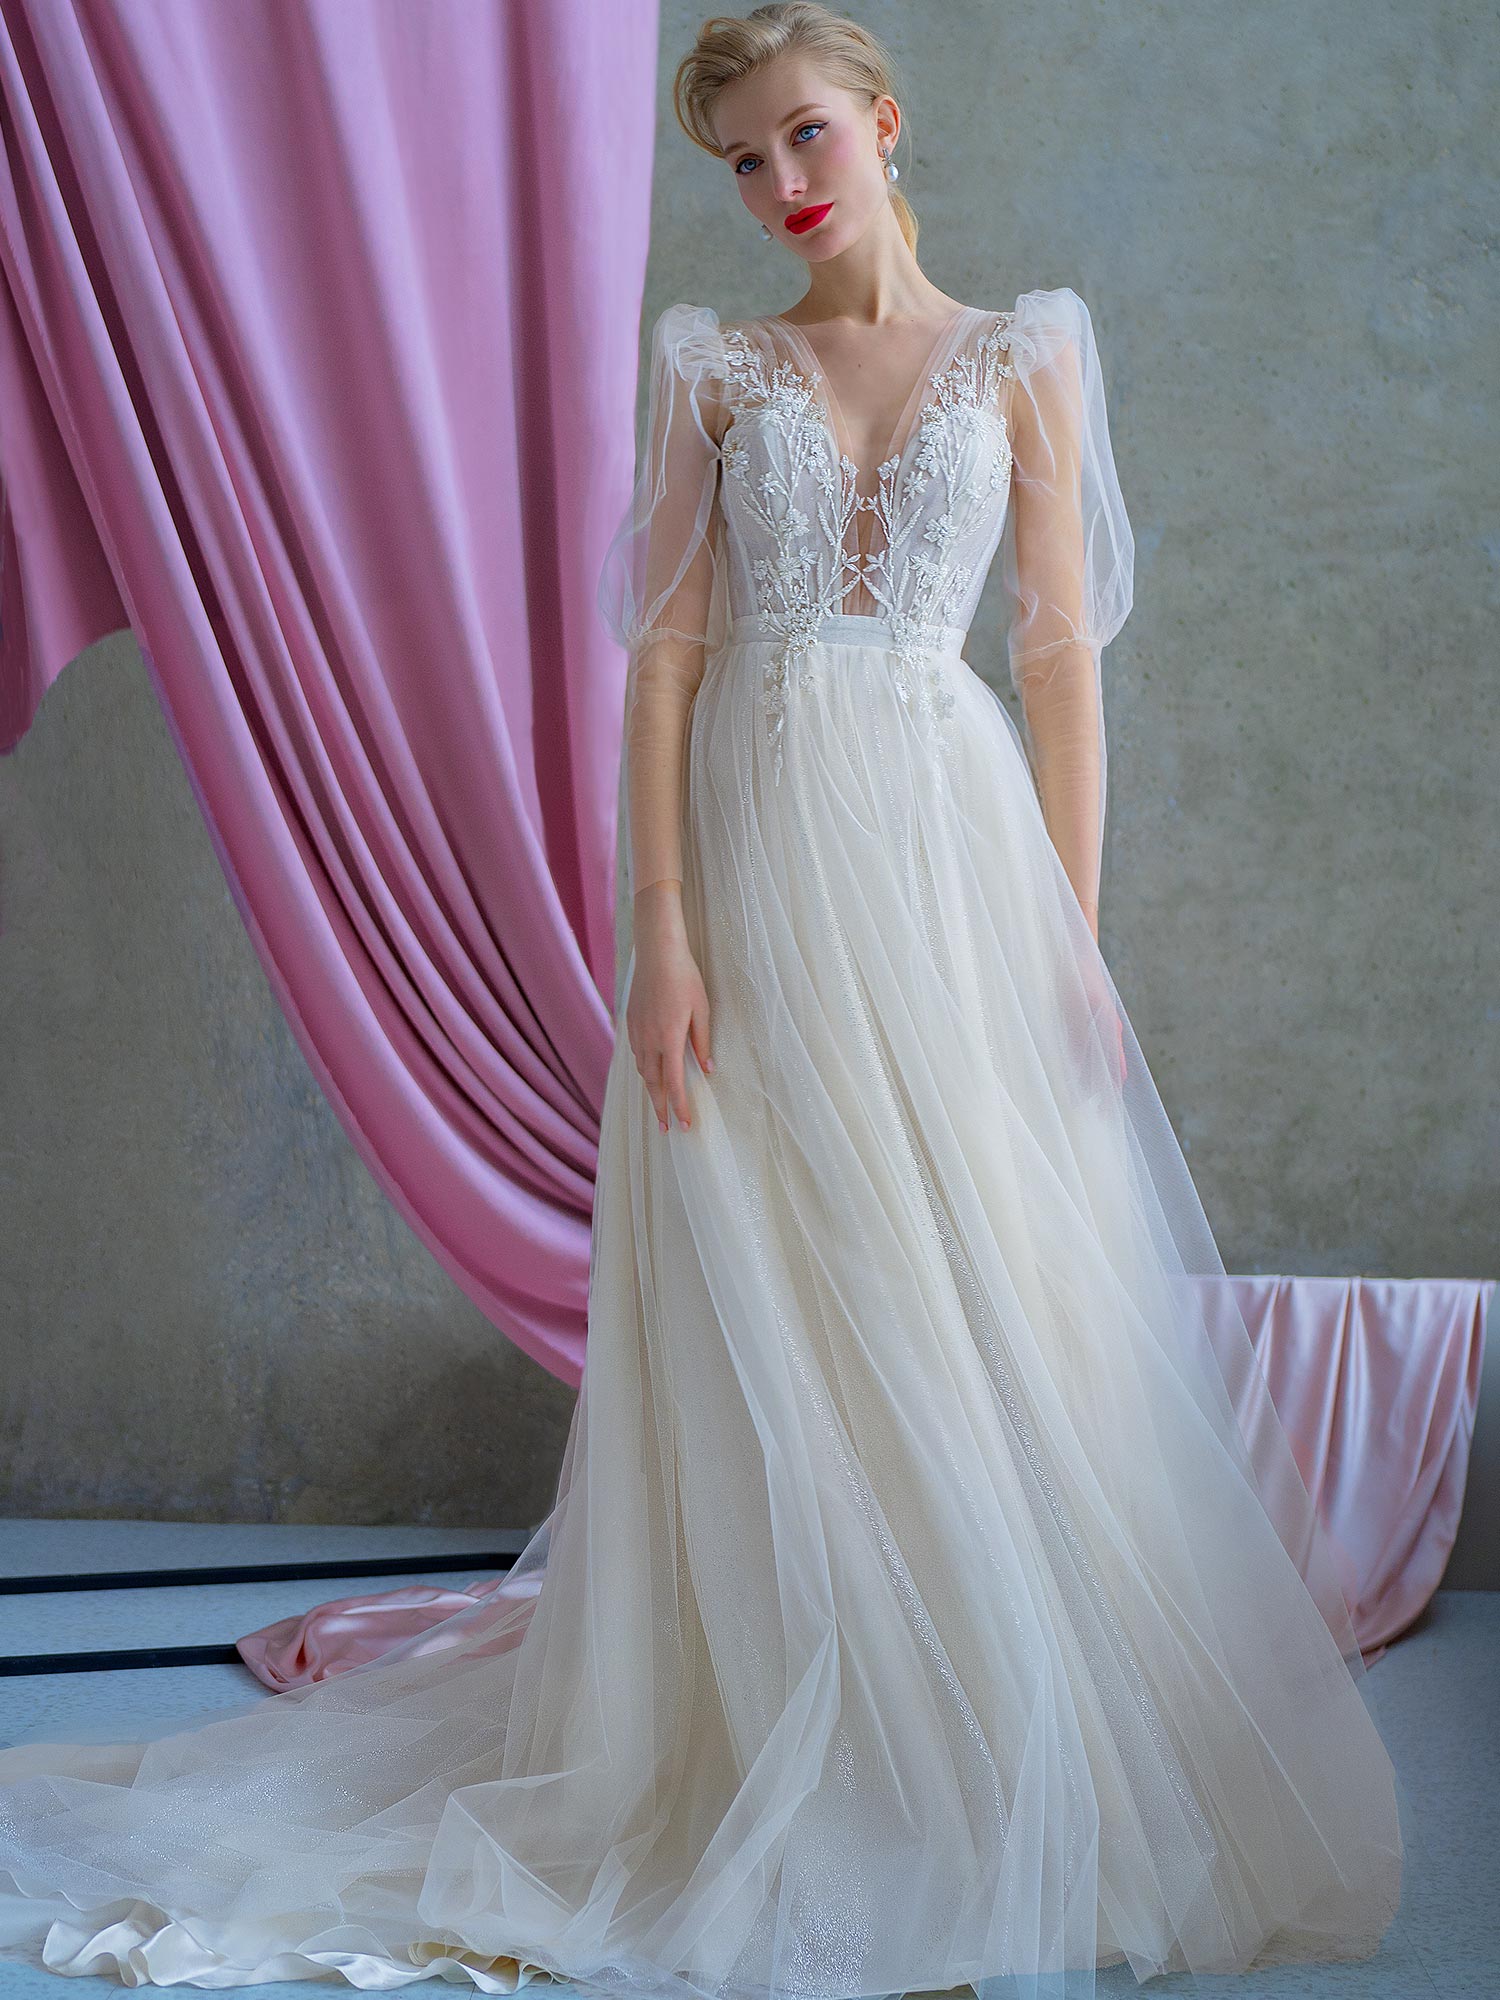 2022 Wedding Dress Trends Papilio Boutique 2699